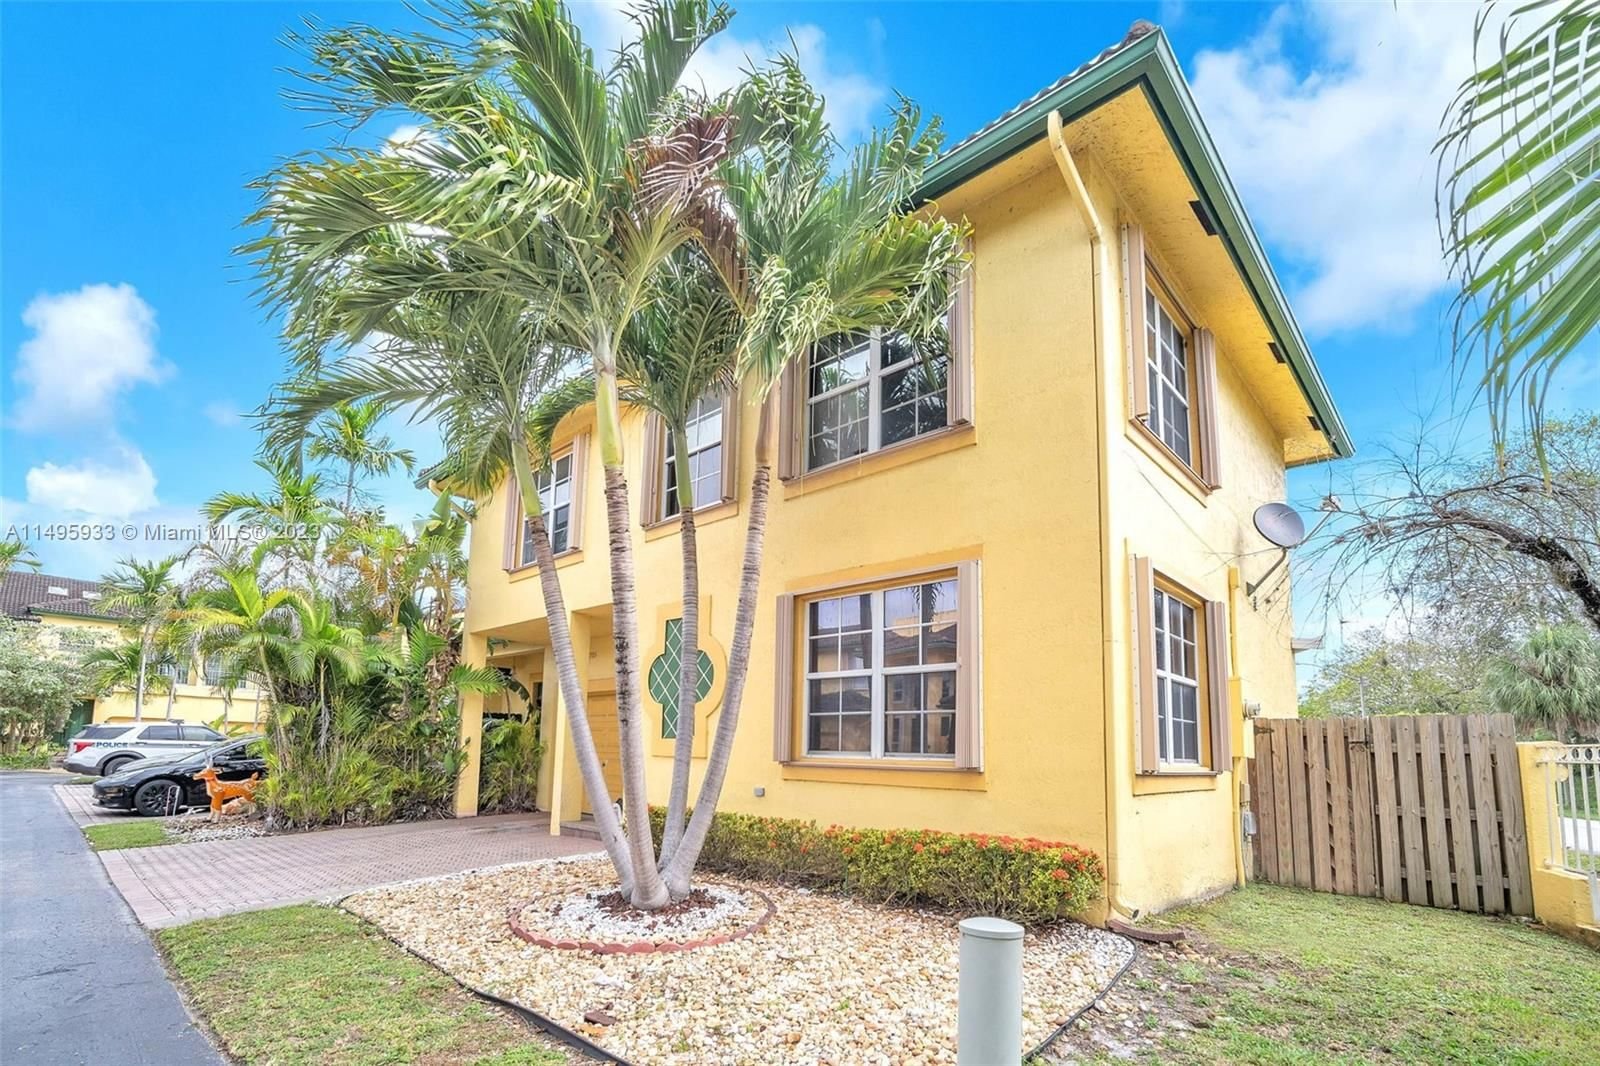 Real estate property located at 705 195th St, Miami-Dade County, PORTOFINO, Miami, FL